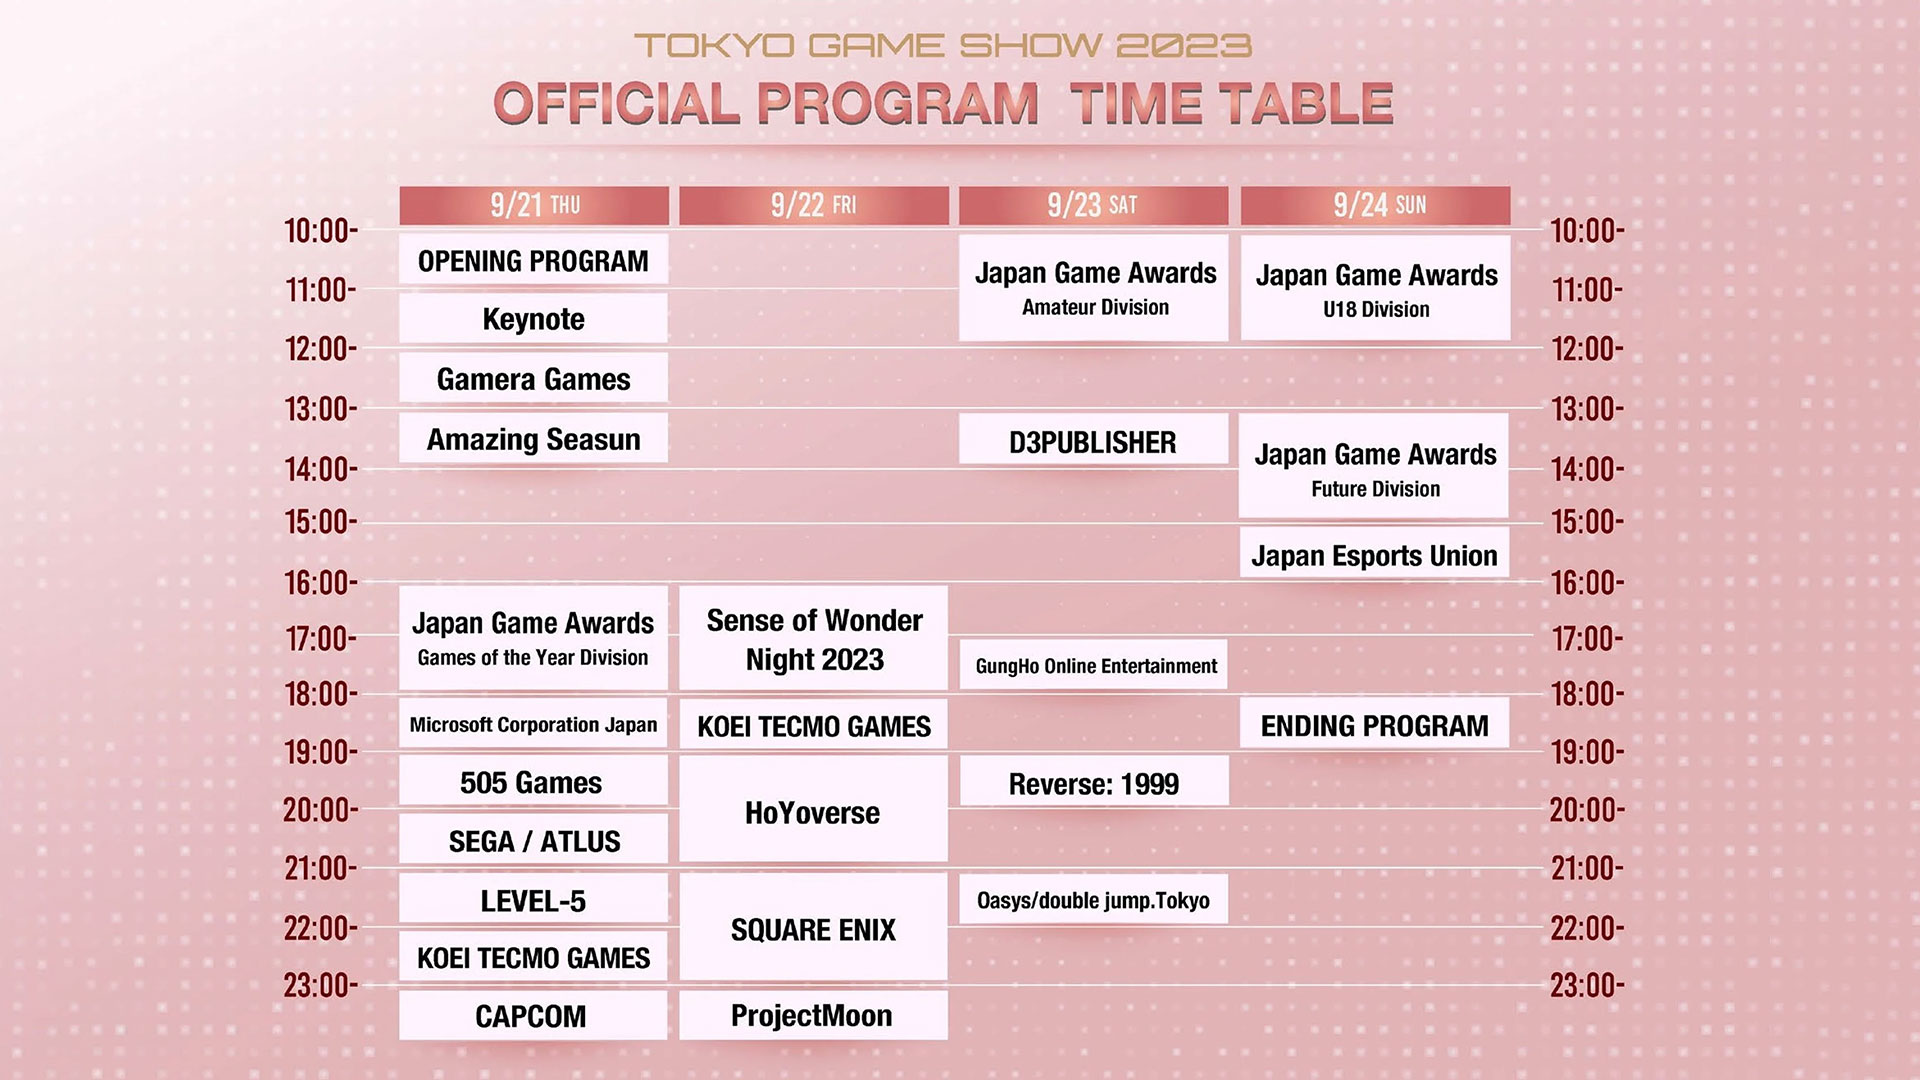 Tokyo Game Show 2023 runs from September 21 through September 24